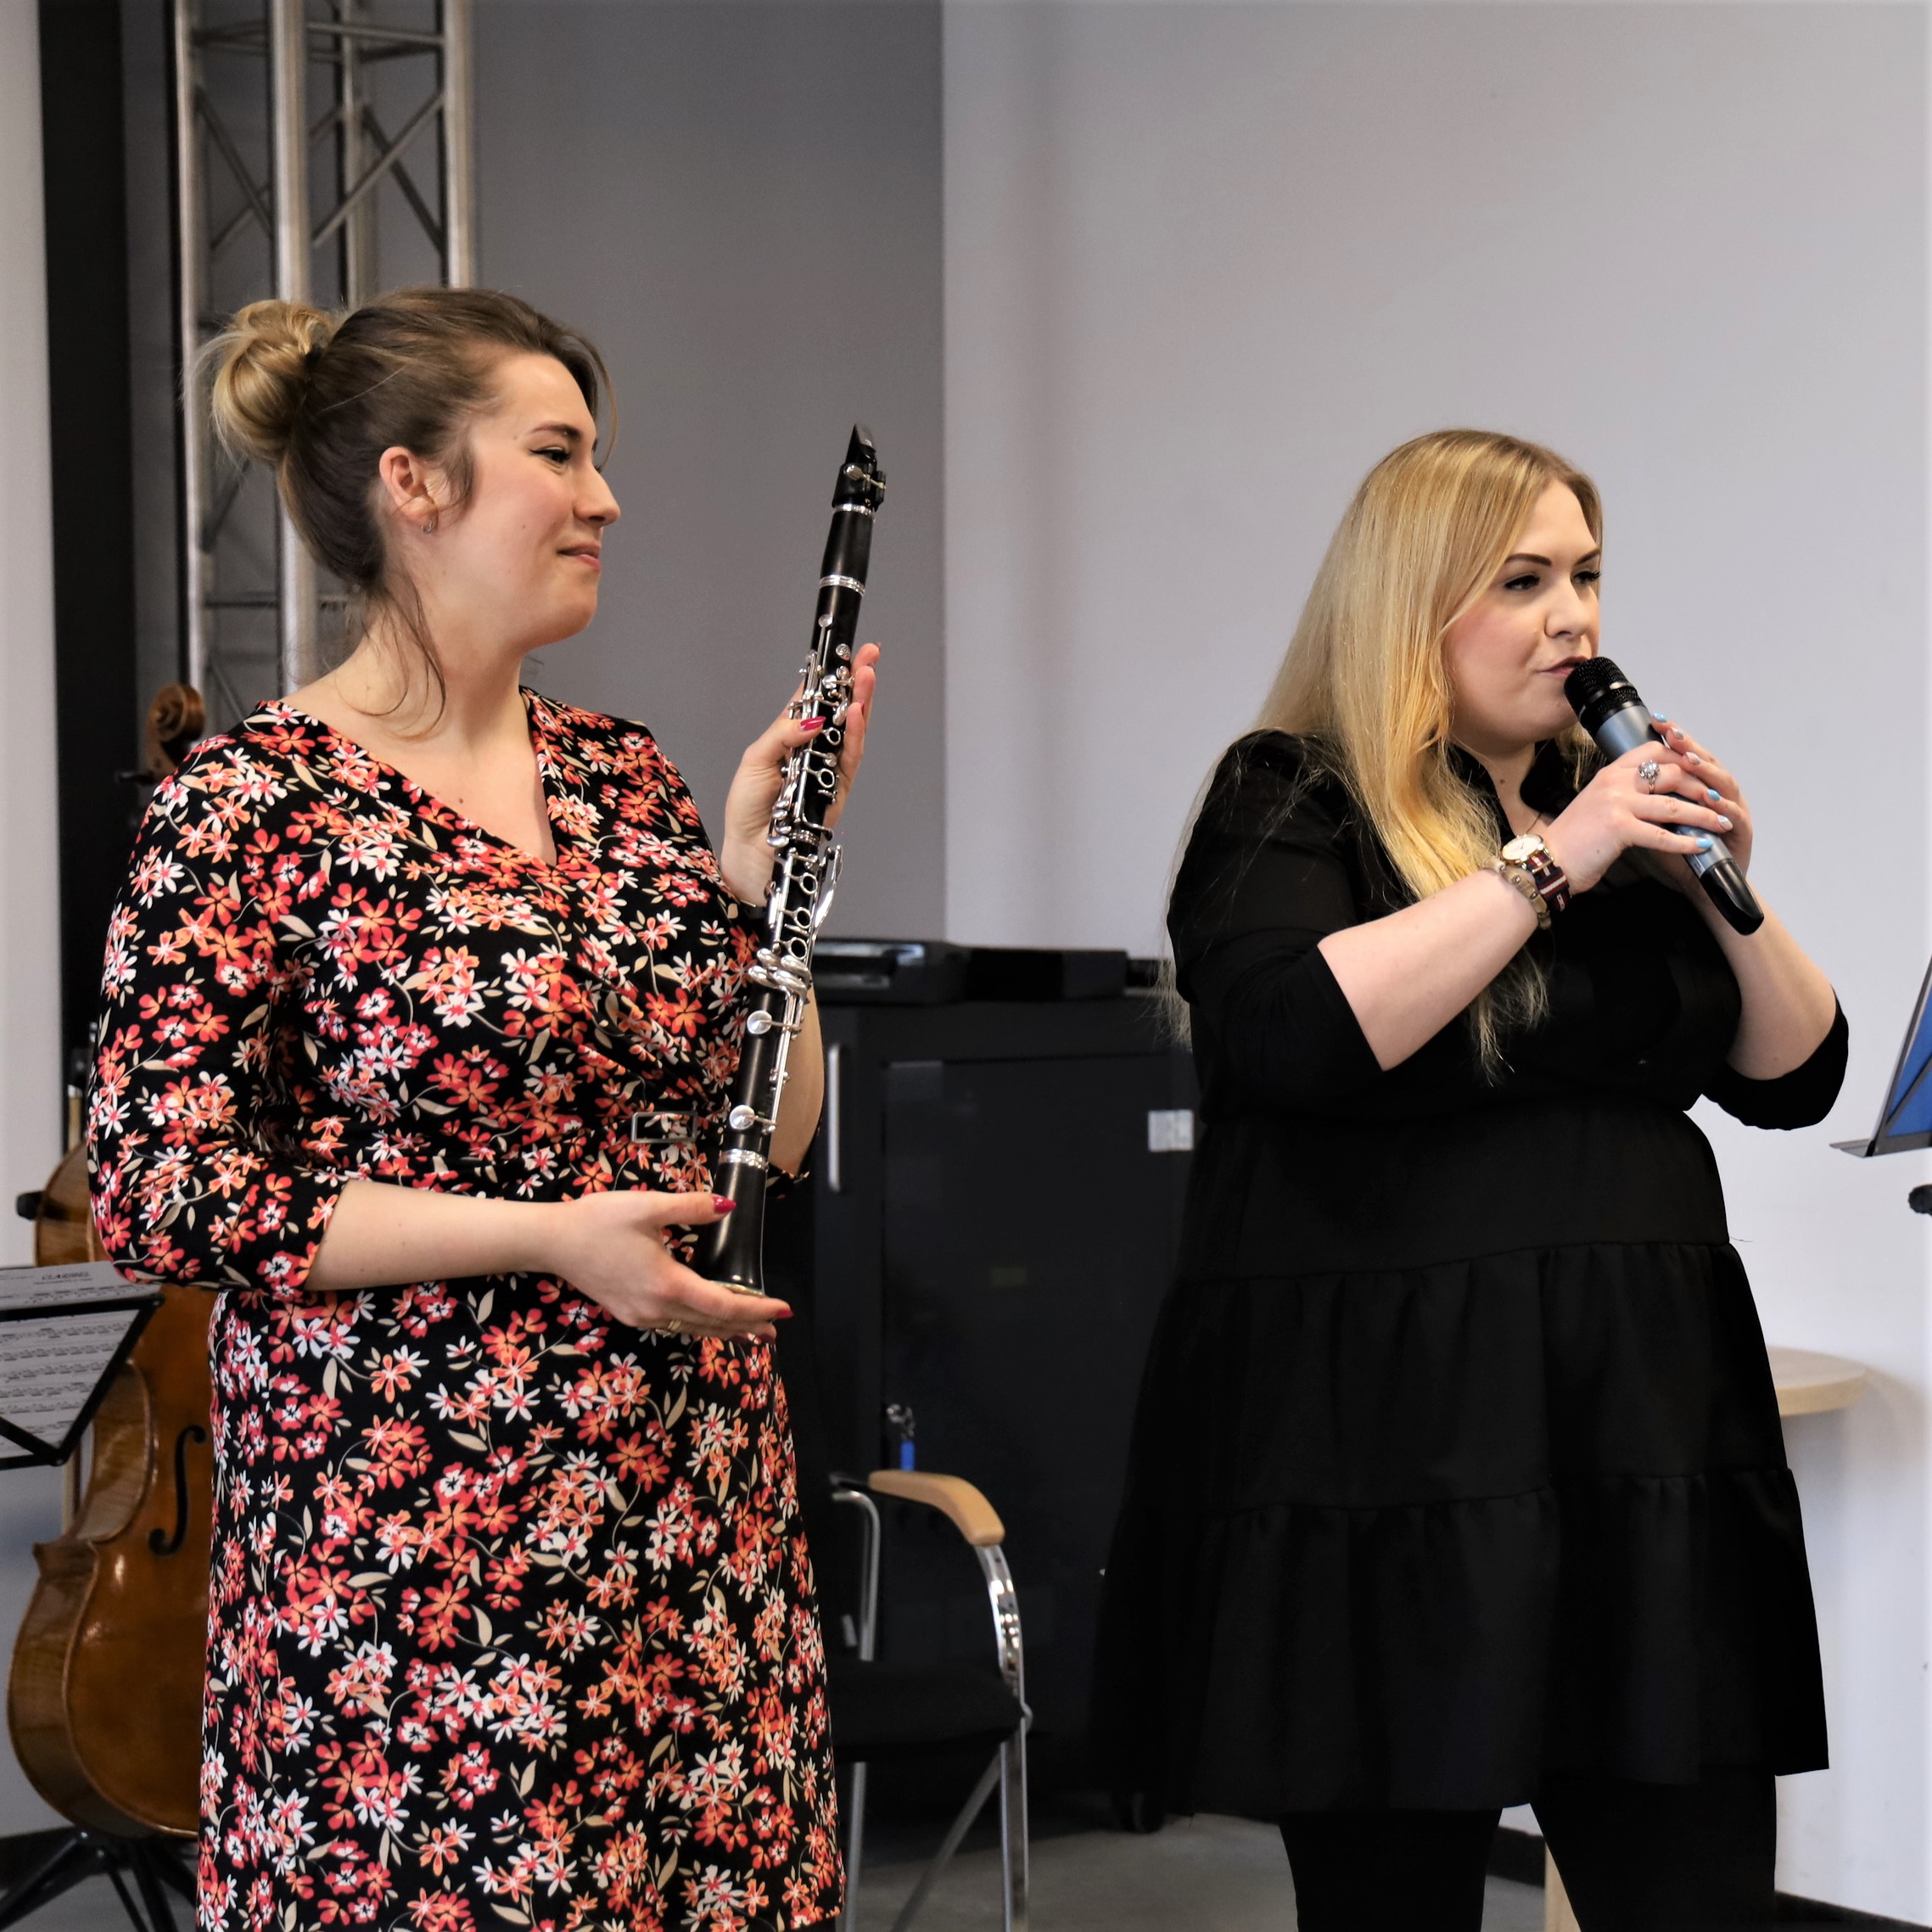 Na zdjęciu Joanna Rawińska pokazuje swój instrument klarnet oraz Iga Marta Ludkiewicz prowadząca prelekcję na audycjach muzycznych